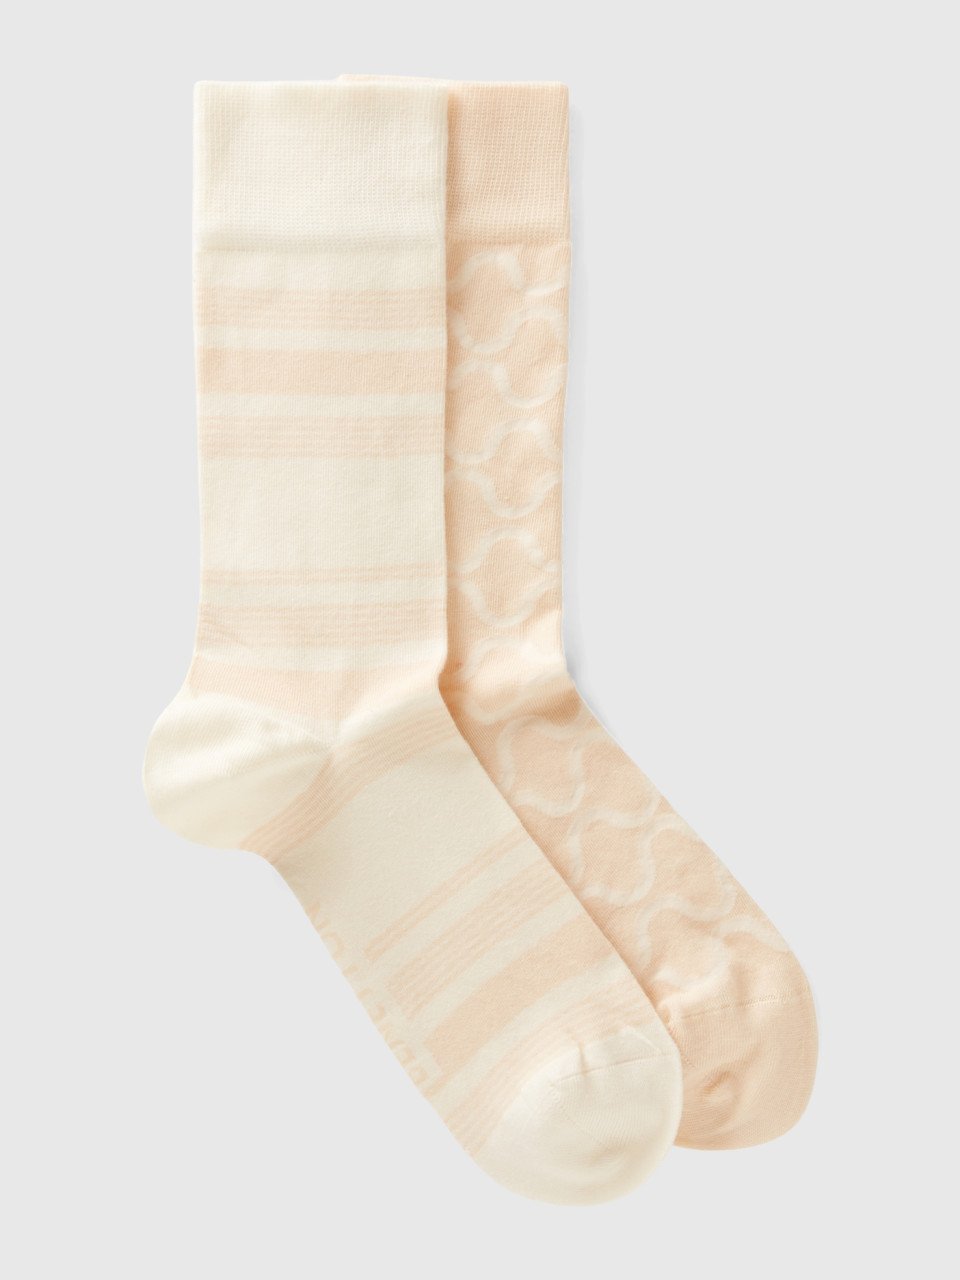 Benetton, Two Pairs Of Cream White And Beige Socks, Creamy White, Women